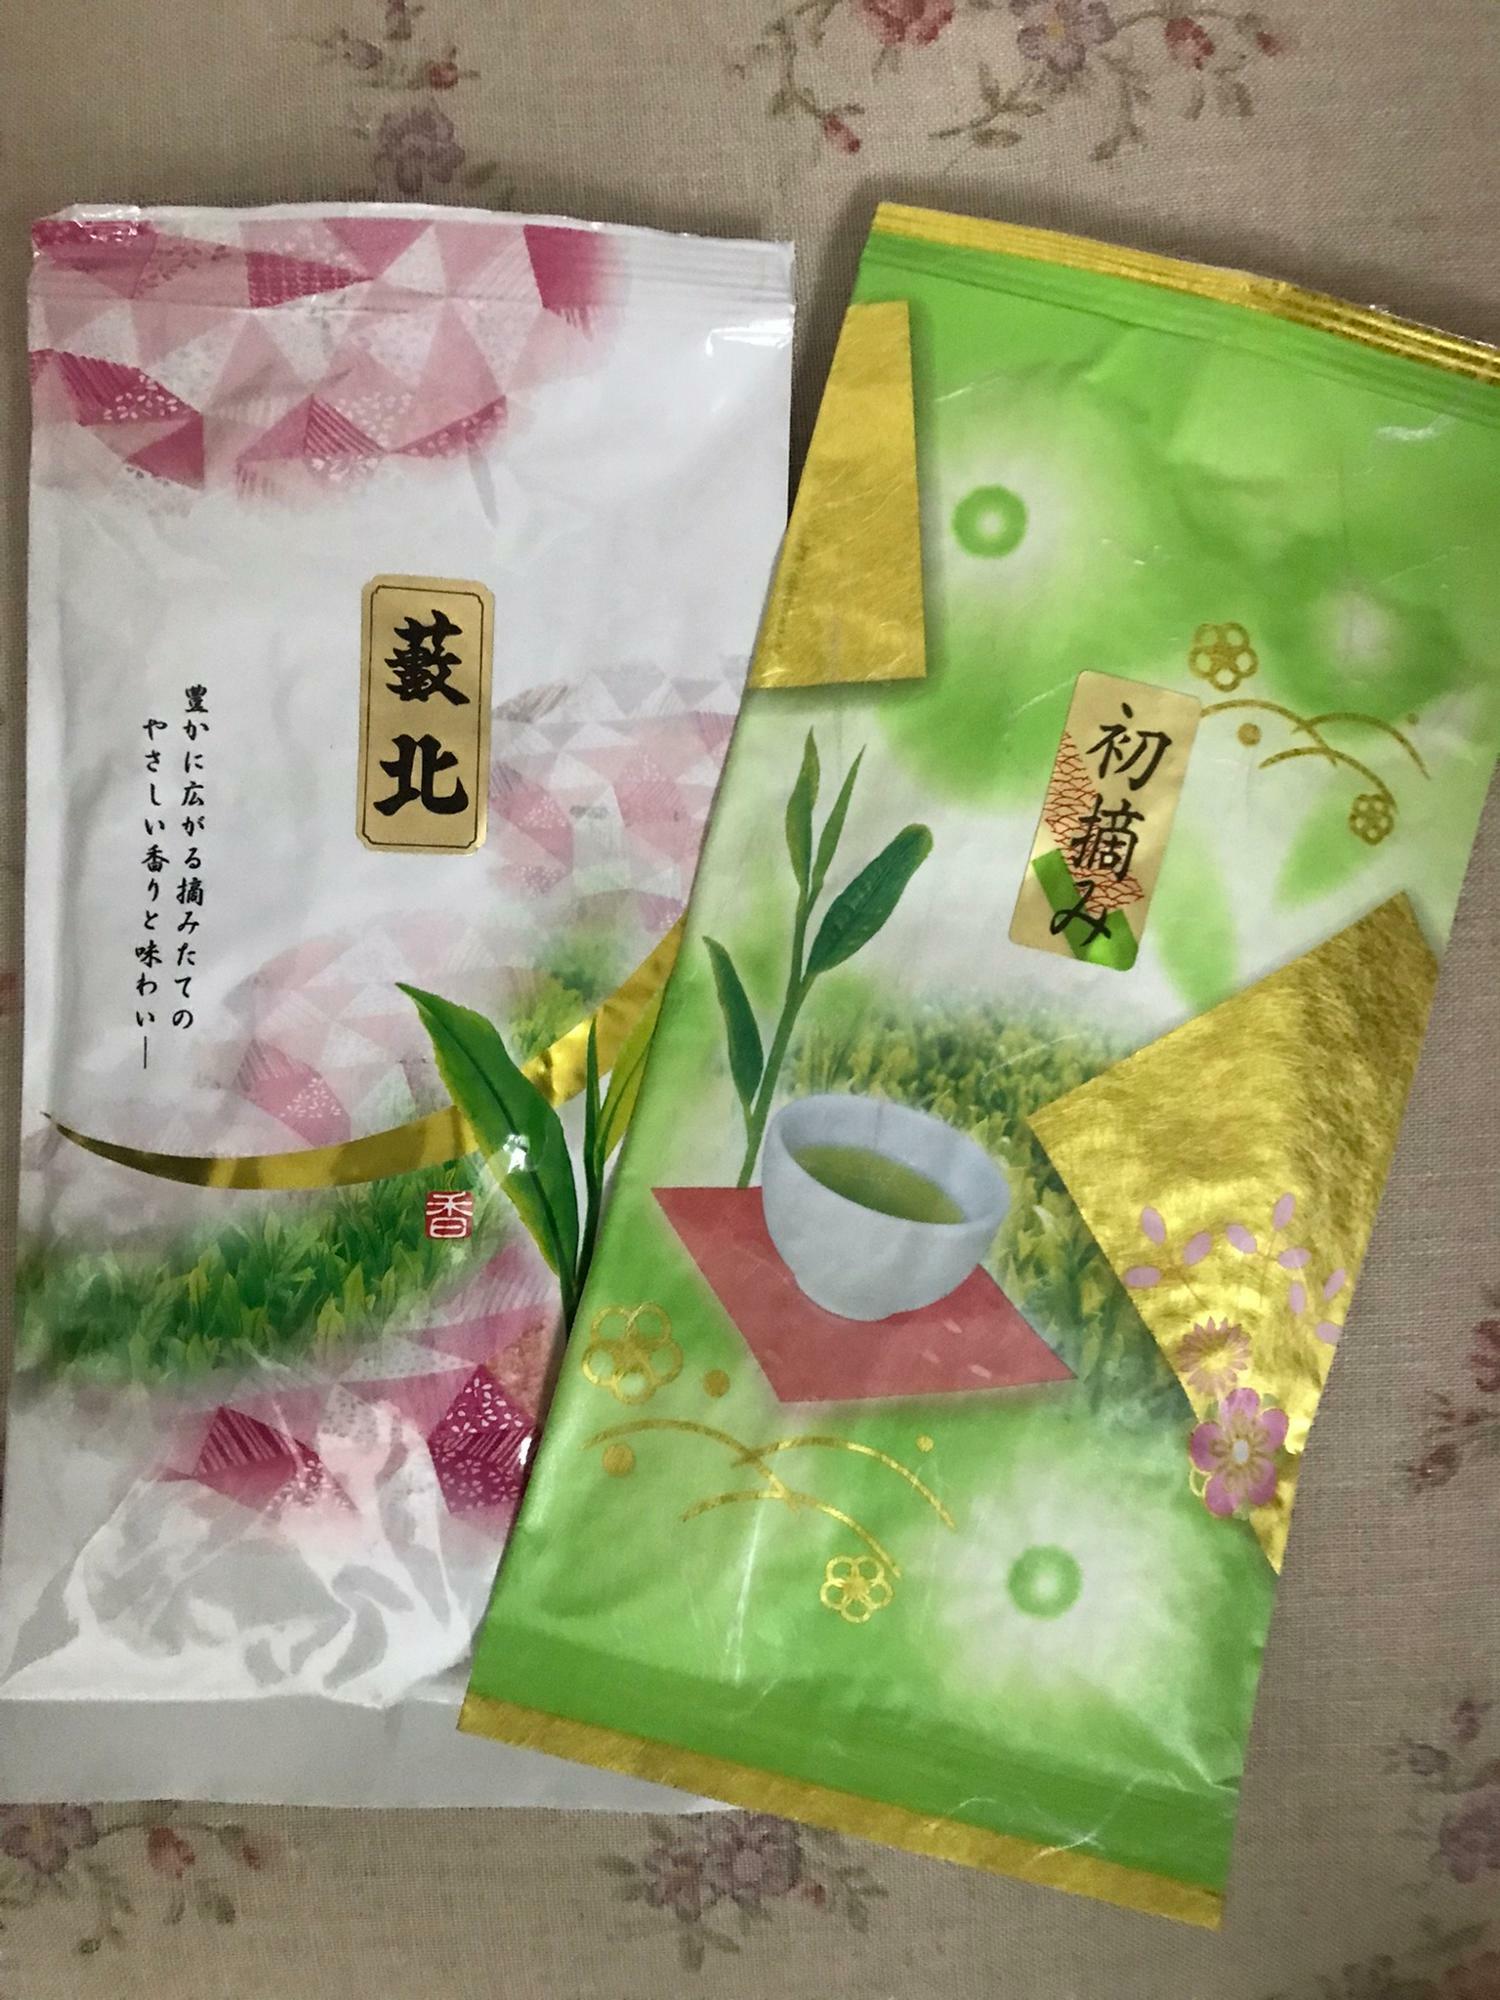 今日は贈答品のお茶も購入して来ました。富士宮産のお茶はいつも喜ばれます！